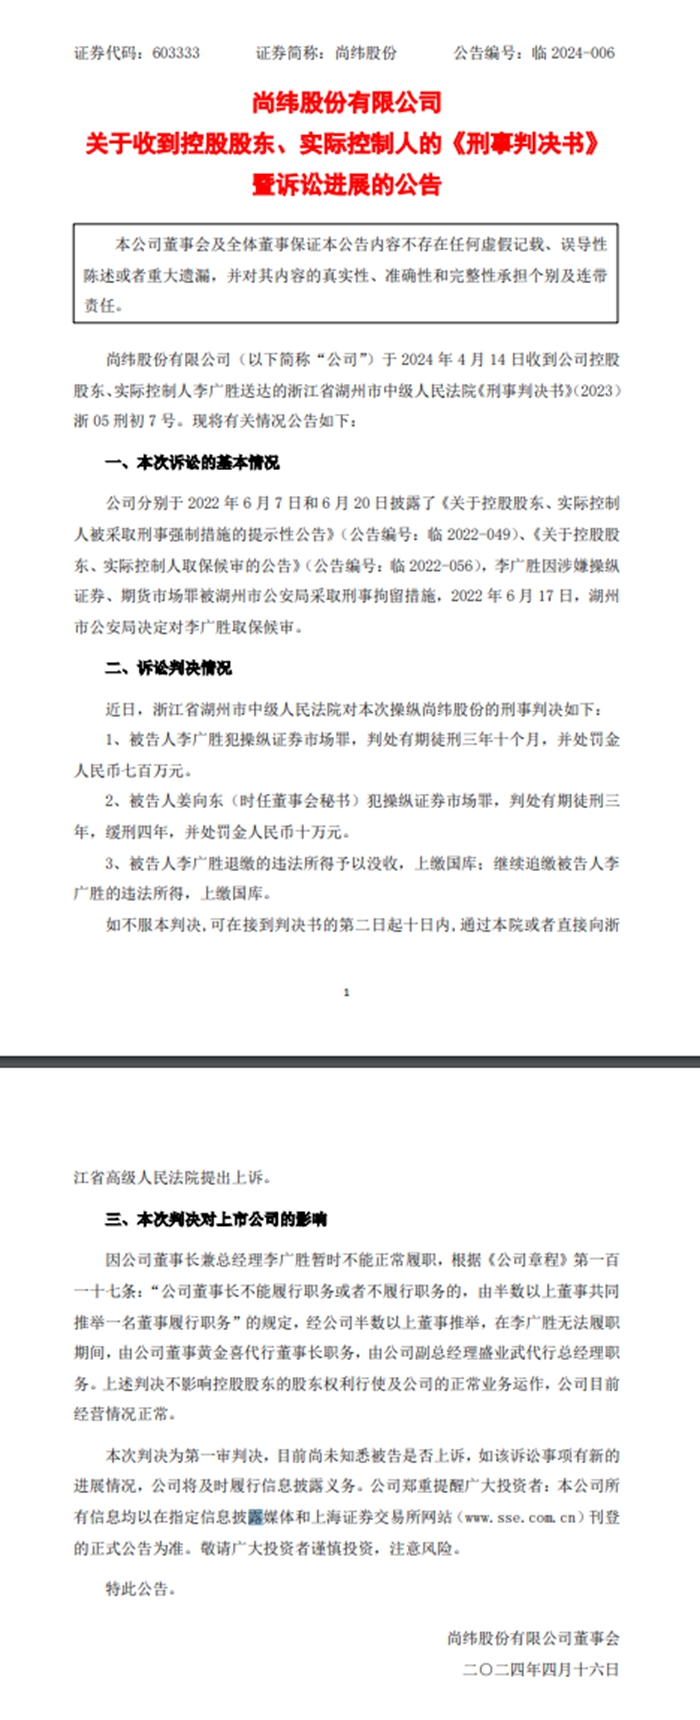 尚纬股份实控人李广胜犯操纵证券市场罪被判3年10个月 股价跌停